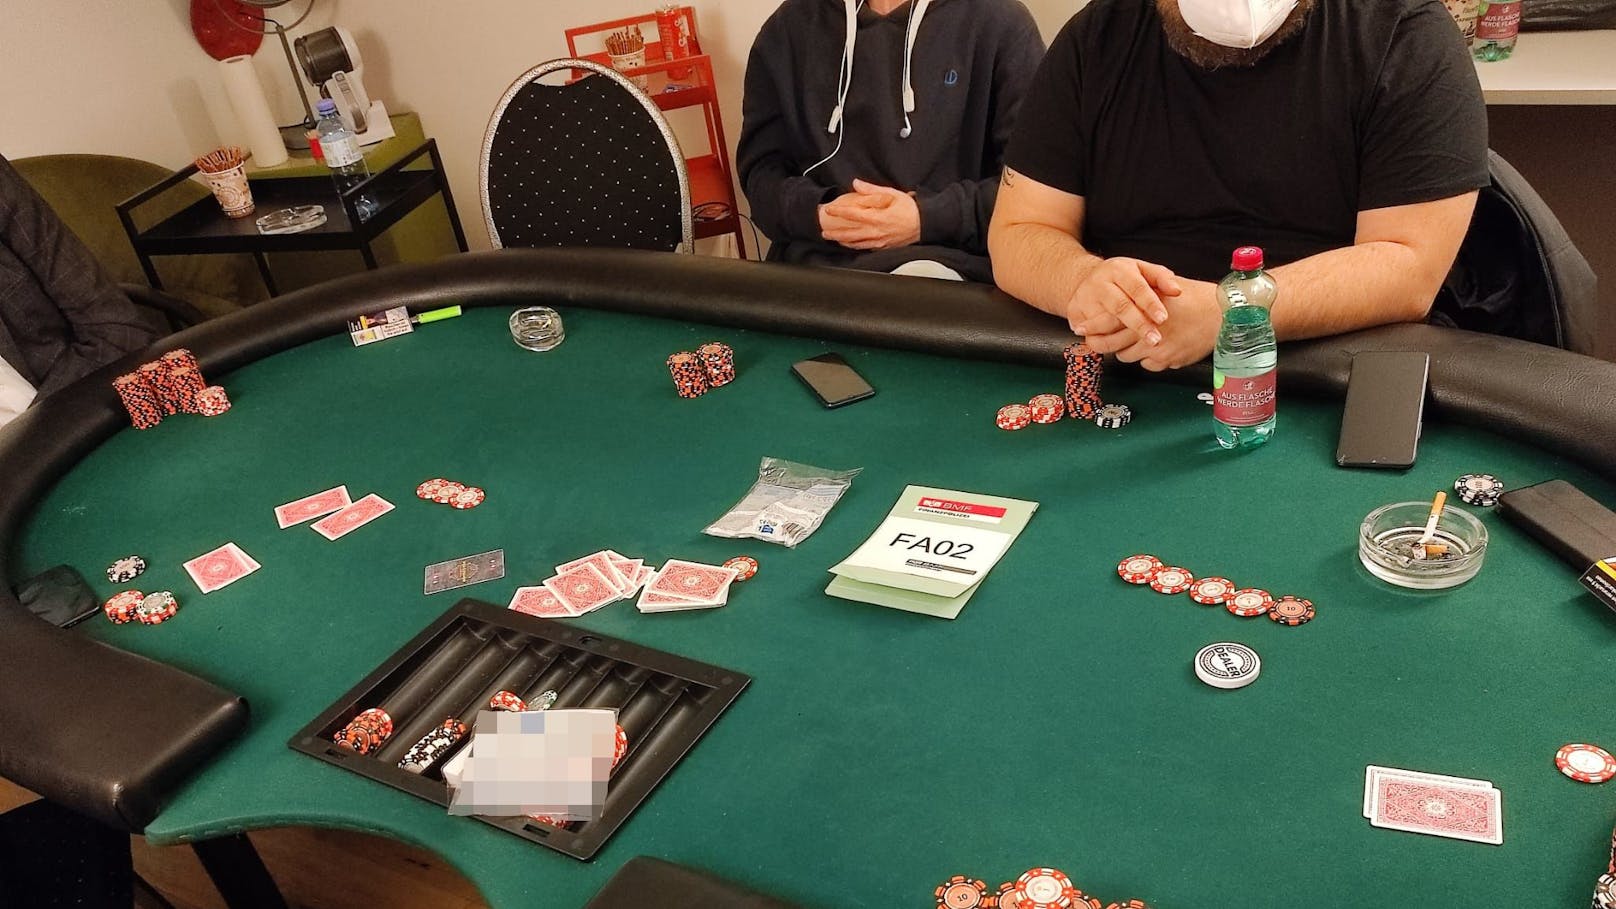 Die Finanzpolizei deckte in Wien-Favoriten ein illegales Pokerlokal auf. Bei der Razzia wurden 20 Spieler angetroffen und auch Drogen sichergestellt.